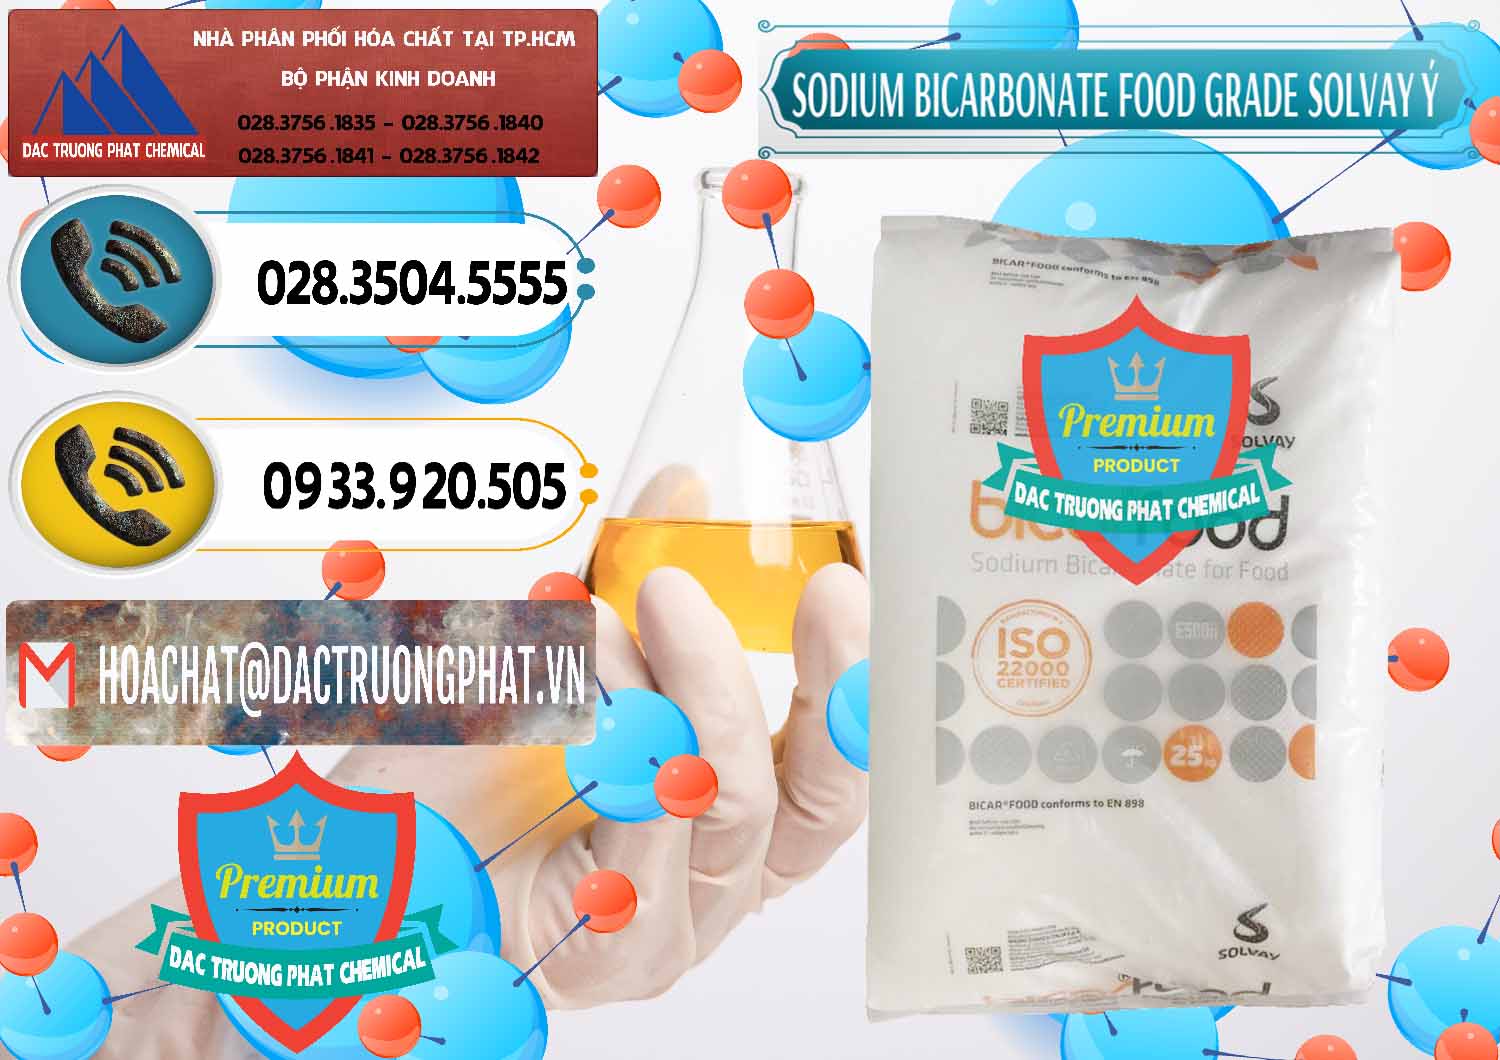 Chuyên bán - cung ứng Sodium Bicarbonate – Bicar NaHCO3 Food Grade Solvay Ý Italy - 0220 - Kinh doanh - phân phối hóa chất tại TP.HCM - hoachatdetnhuom.vn